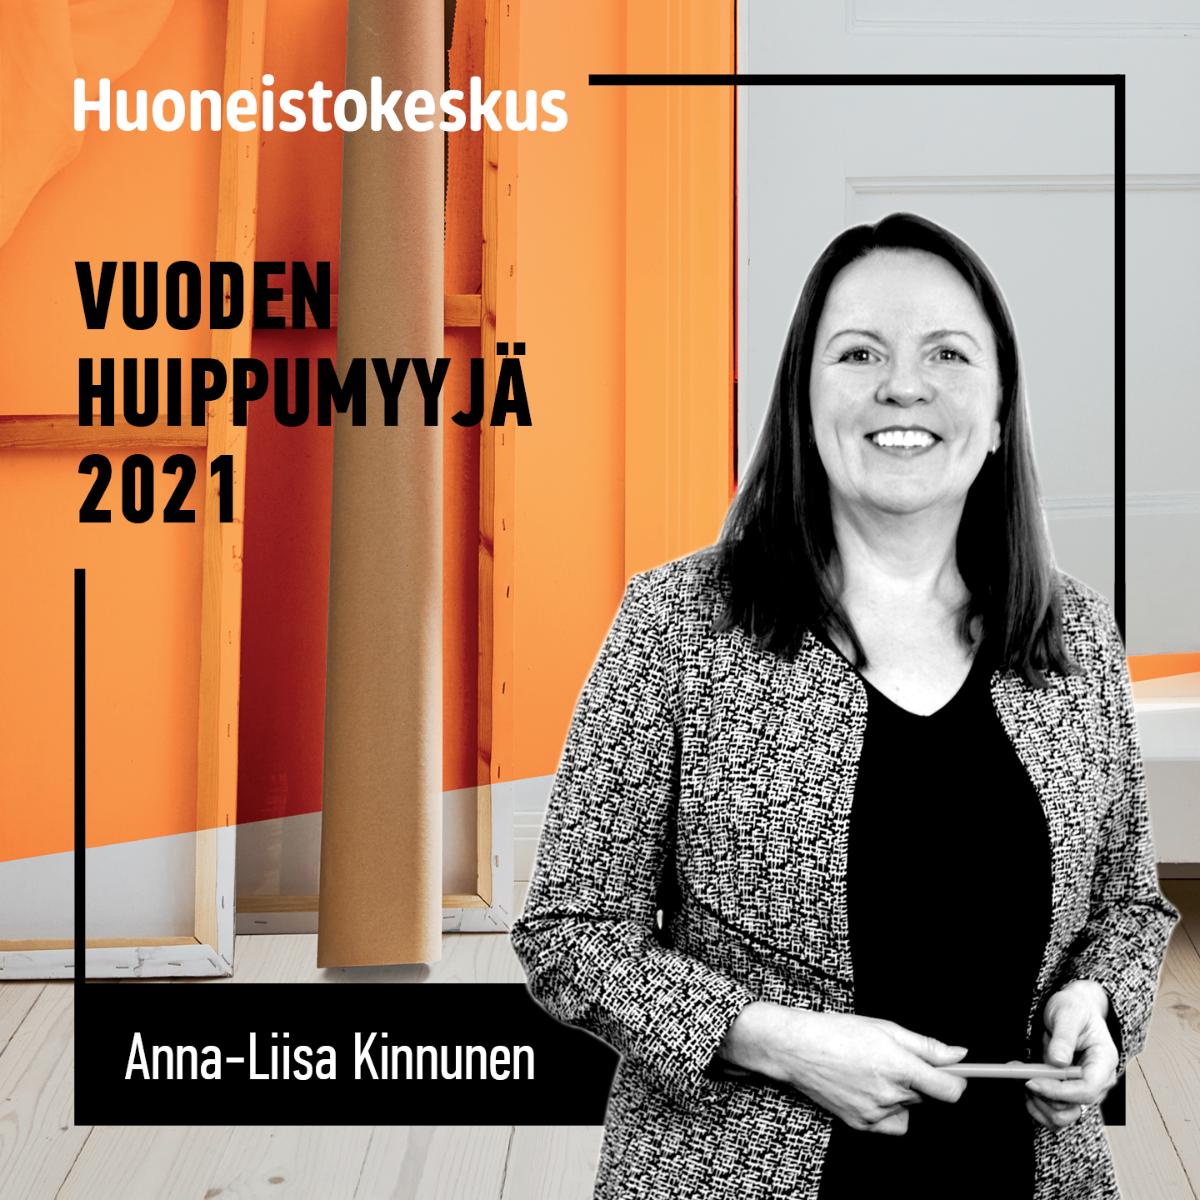 Anna-Liisa Kinnunen